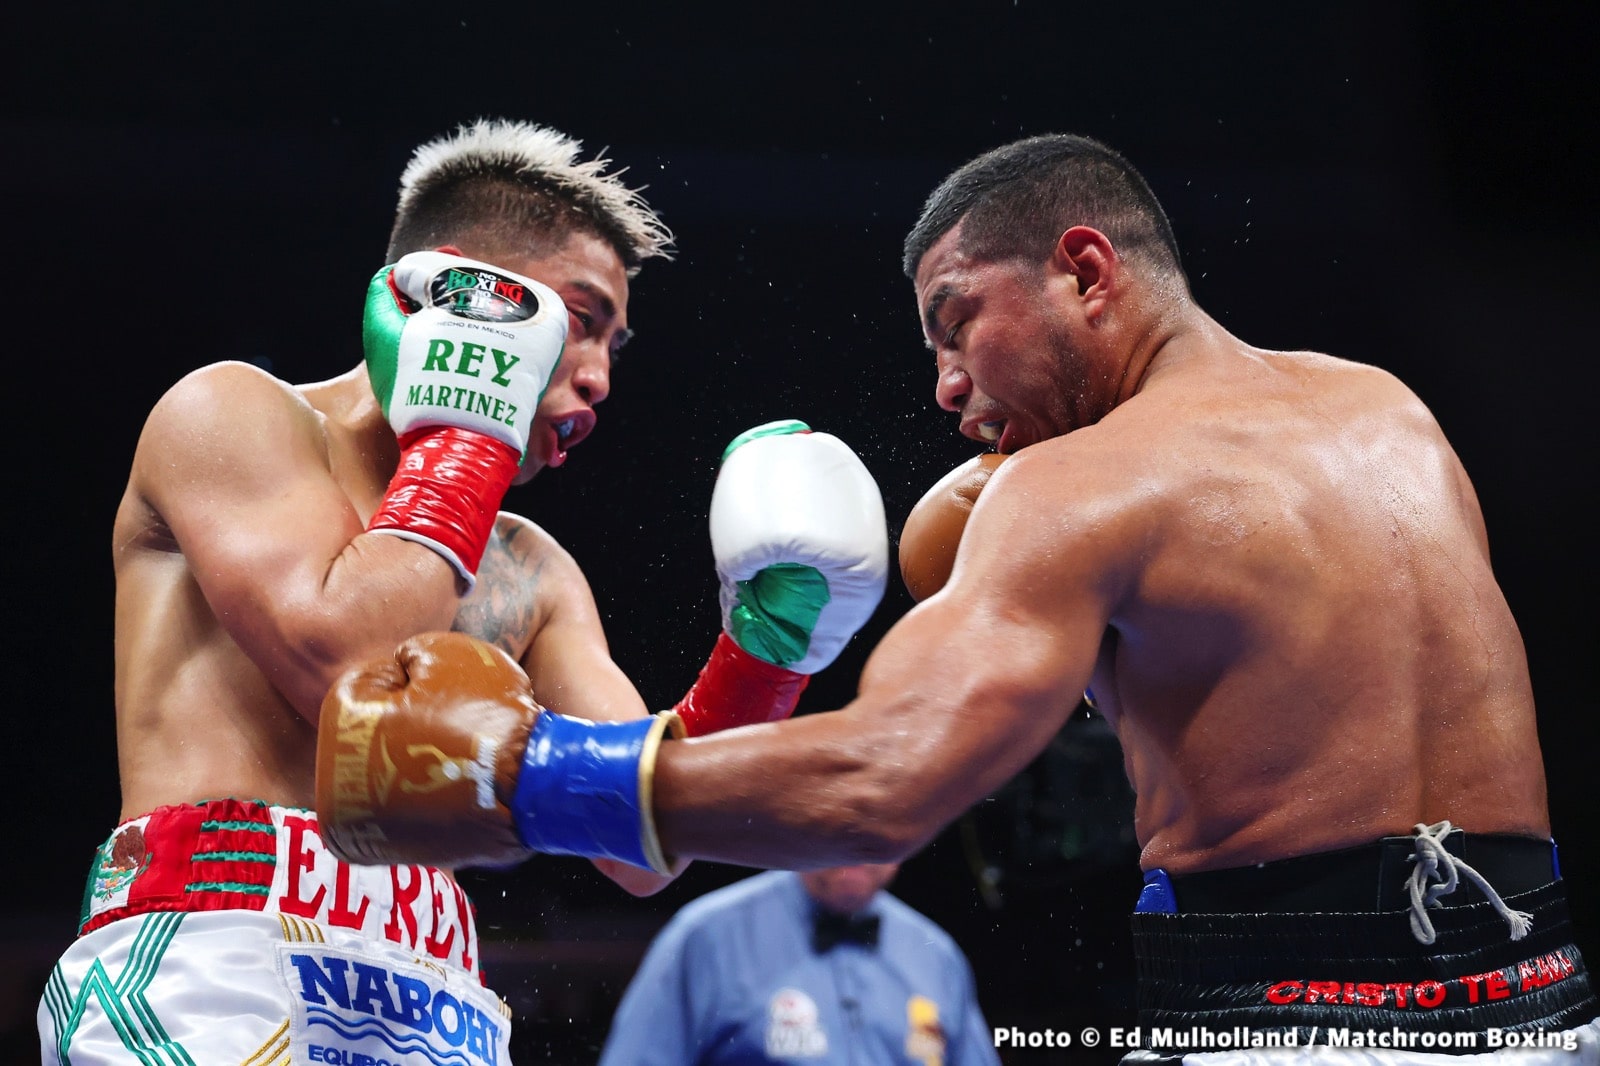 Jesse Rodriguez boxing image / photo